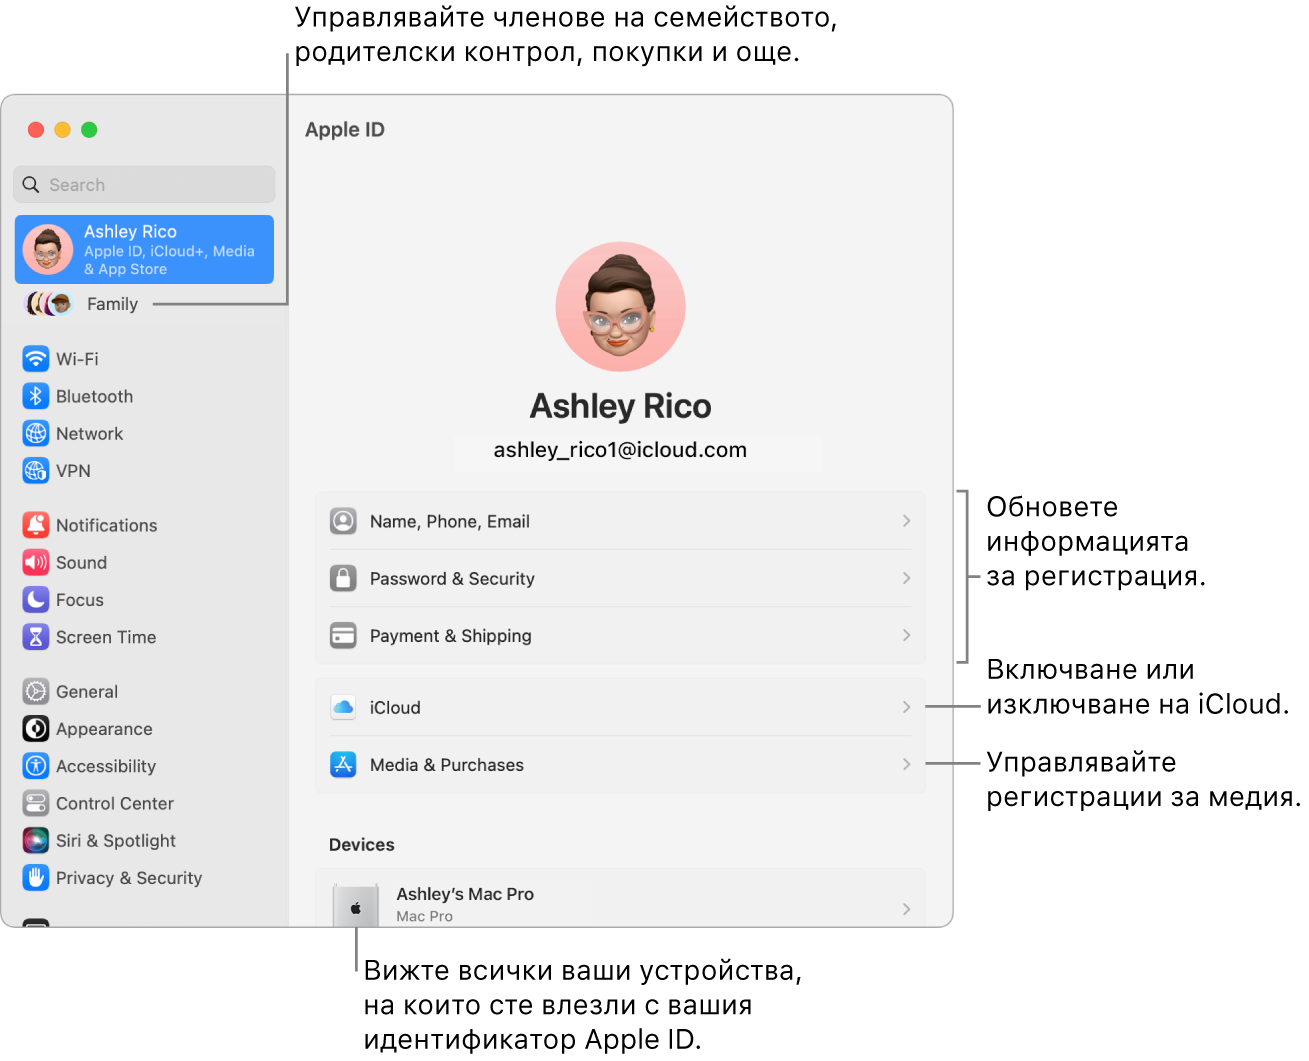 Панелът на Apple ID в System Settings (Системни настройки) с изнесени означения за обновяване на информация за регистрация, включване и изключване на функции на iCloud, управление на регистрации за медийно съдържание и Family (Семейство), от където можете да управлявате членове на семейството, родителски контрол, покупки и други.